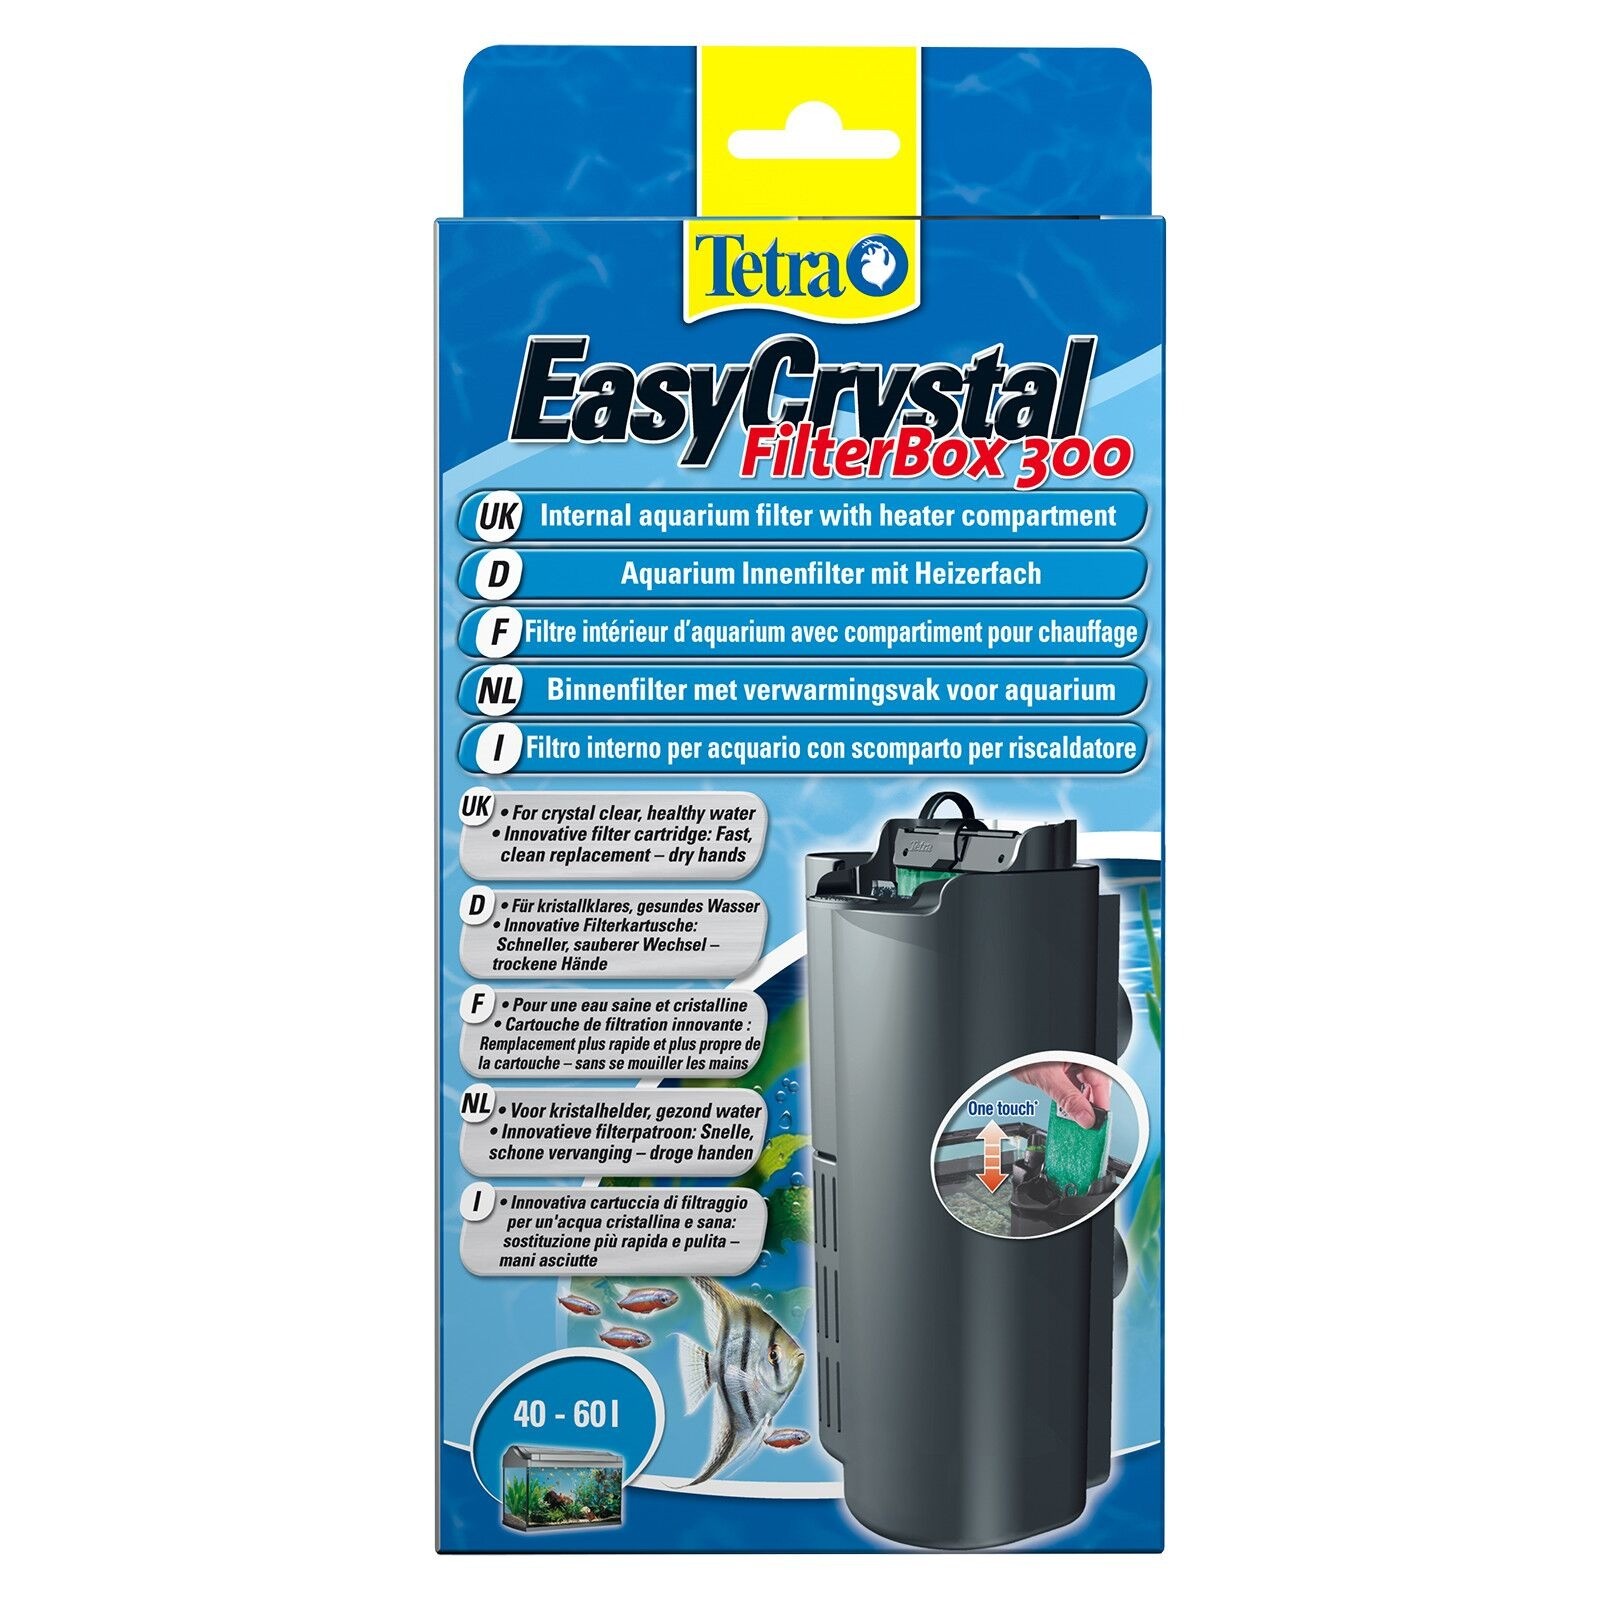 Tetra Easy Crystal Filter Box 300 İç Filtre